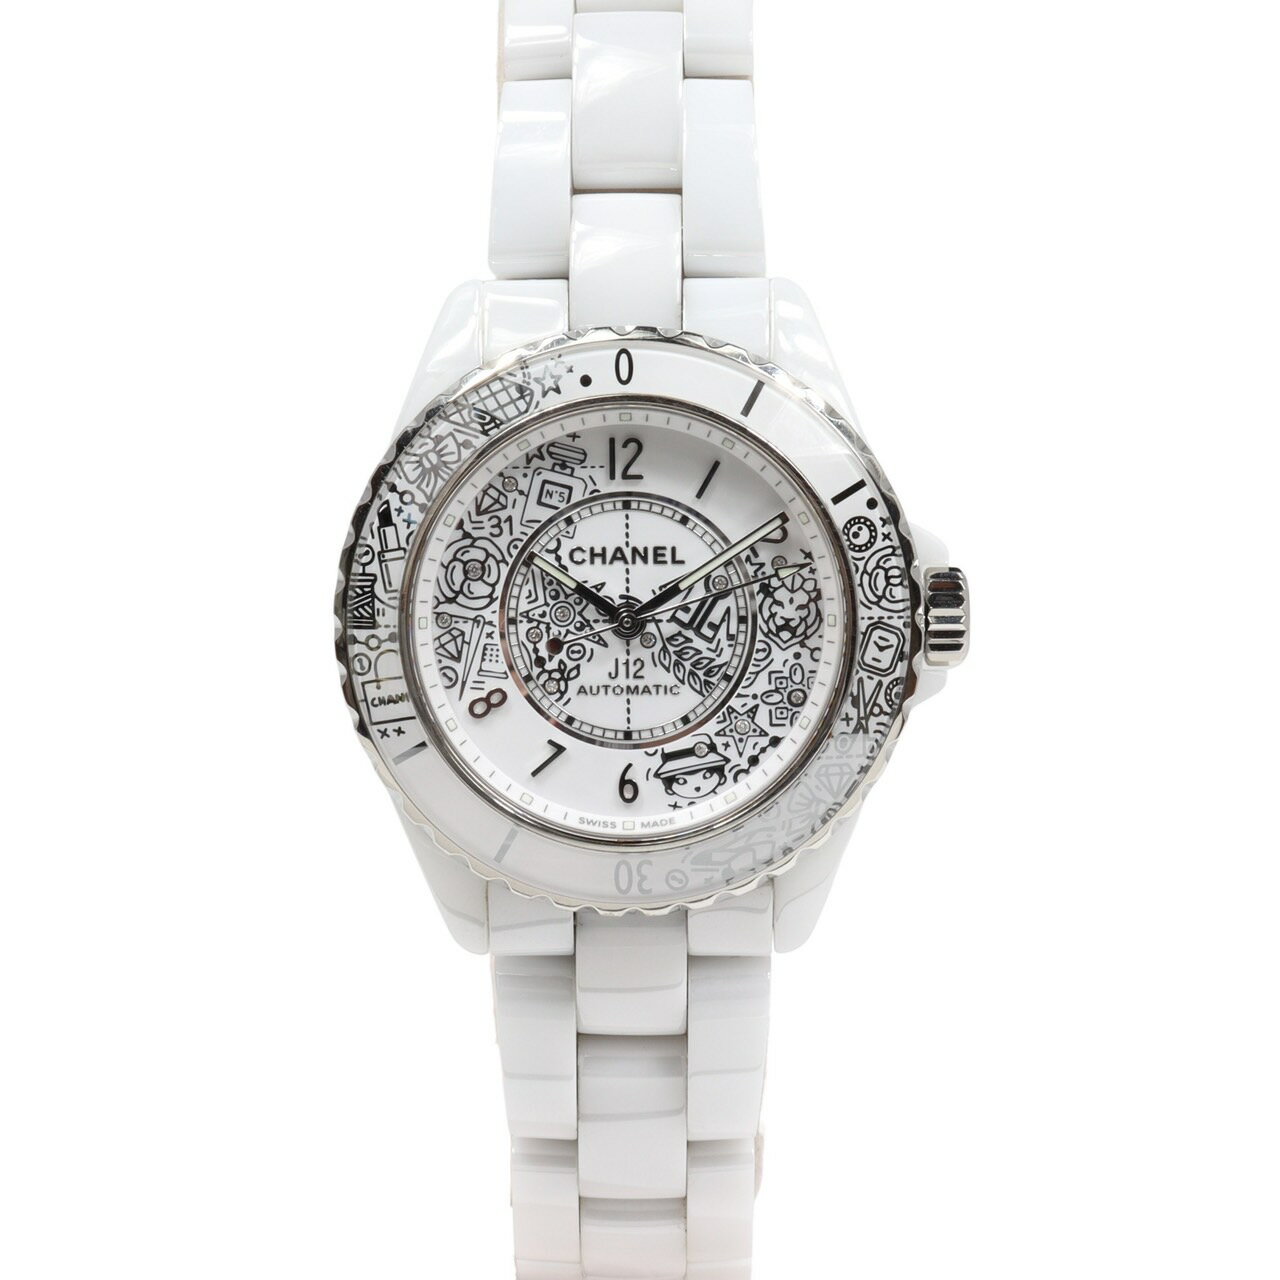 CHANEL シャネル J12 H6476 12P ダイヤモンド ホワイト セラミック SS 白 白文字盤 自動巻き 腕時計 2020本世界限定 1年間保証 時計 おしゃれ ブランド ブランド時計 誕生日 プレゼント 送料無料 